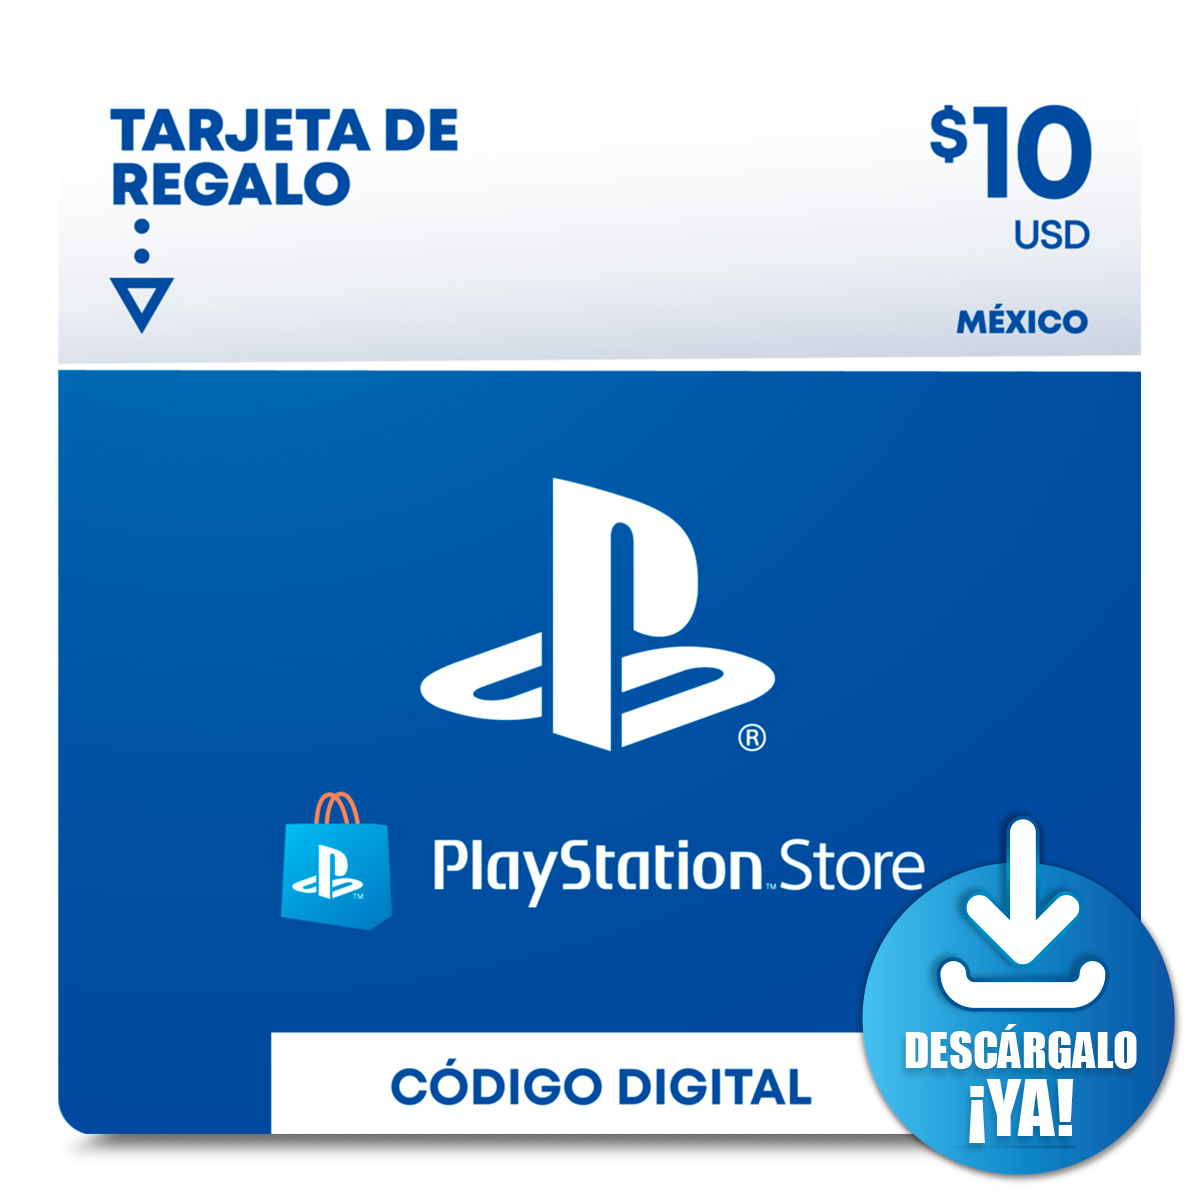 Adelantar Actualizar Es mas que Tarjeta de Regalo PlayStation 10 USD | RadioShack México